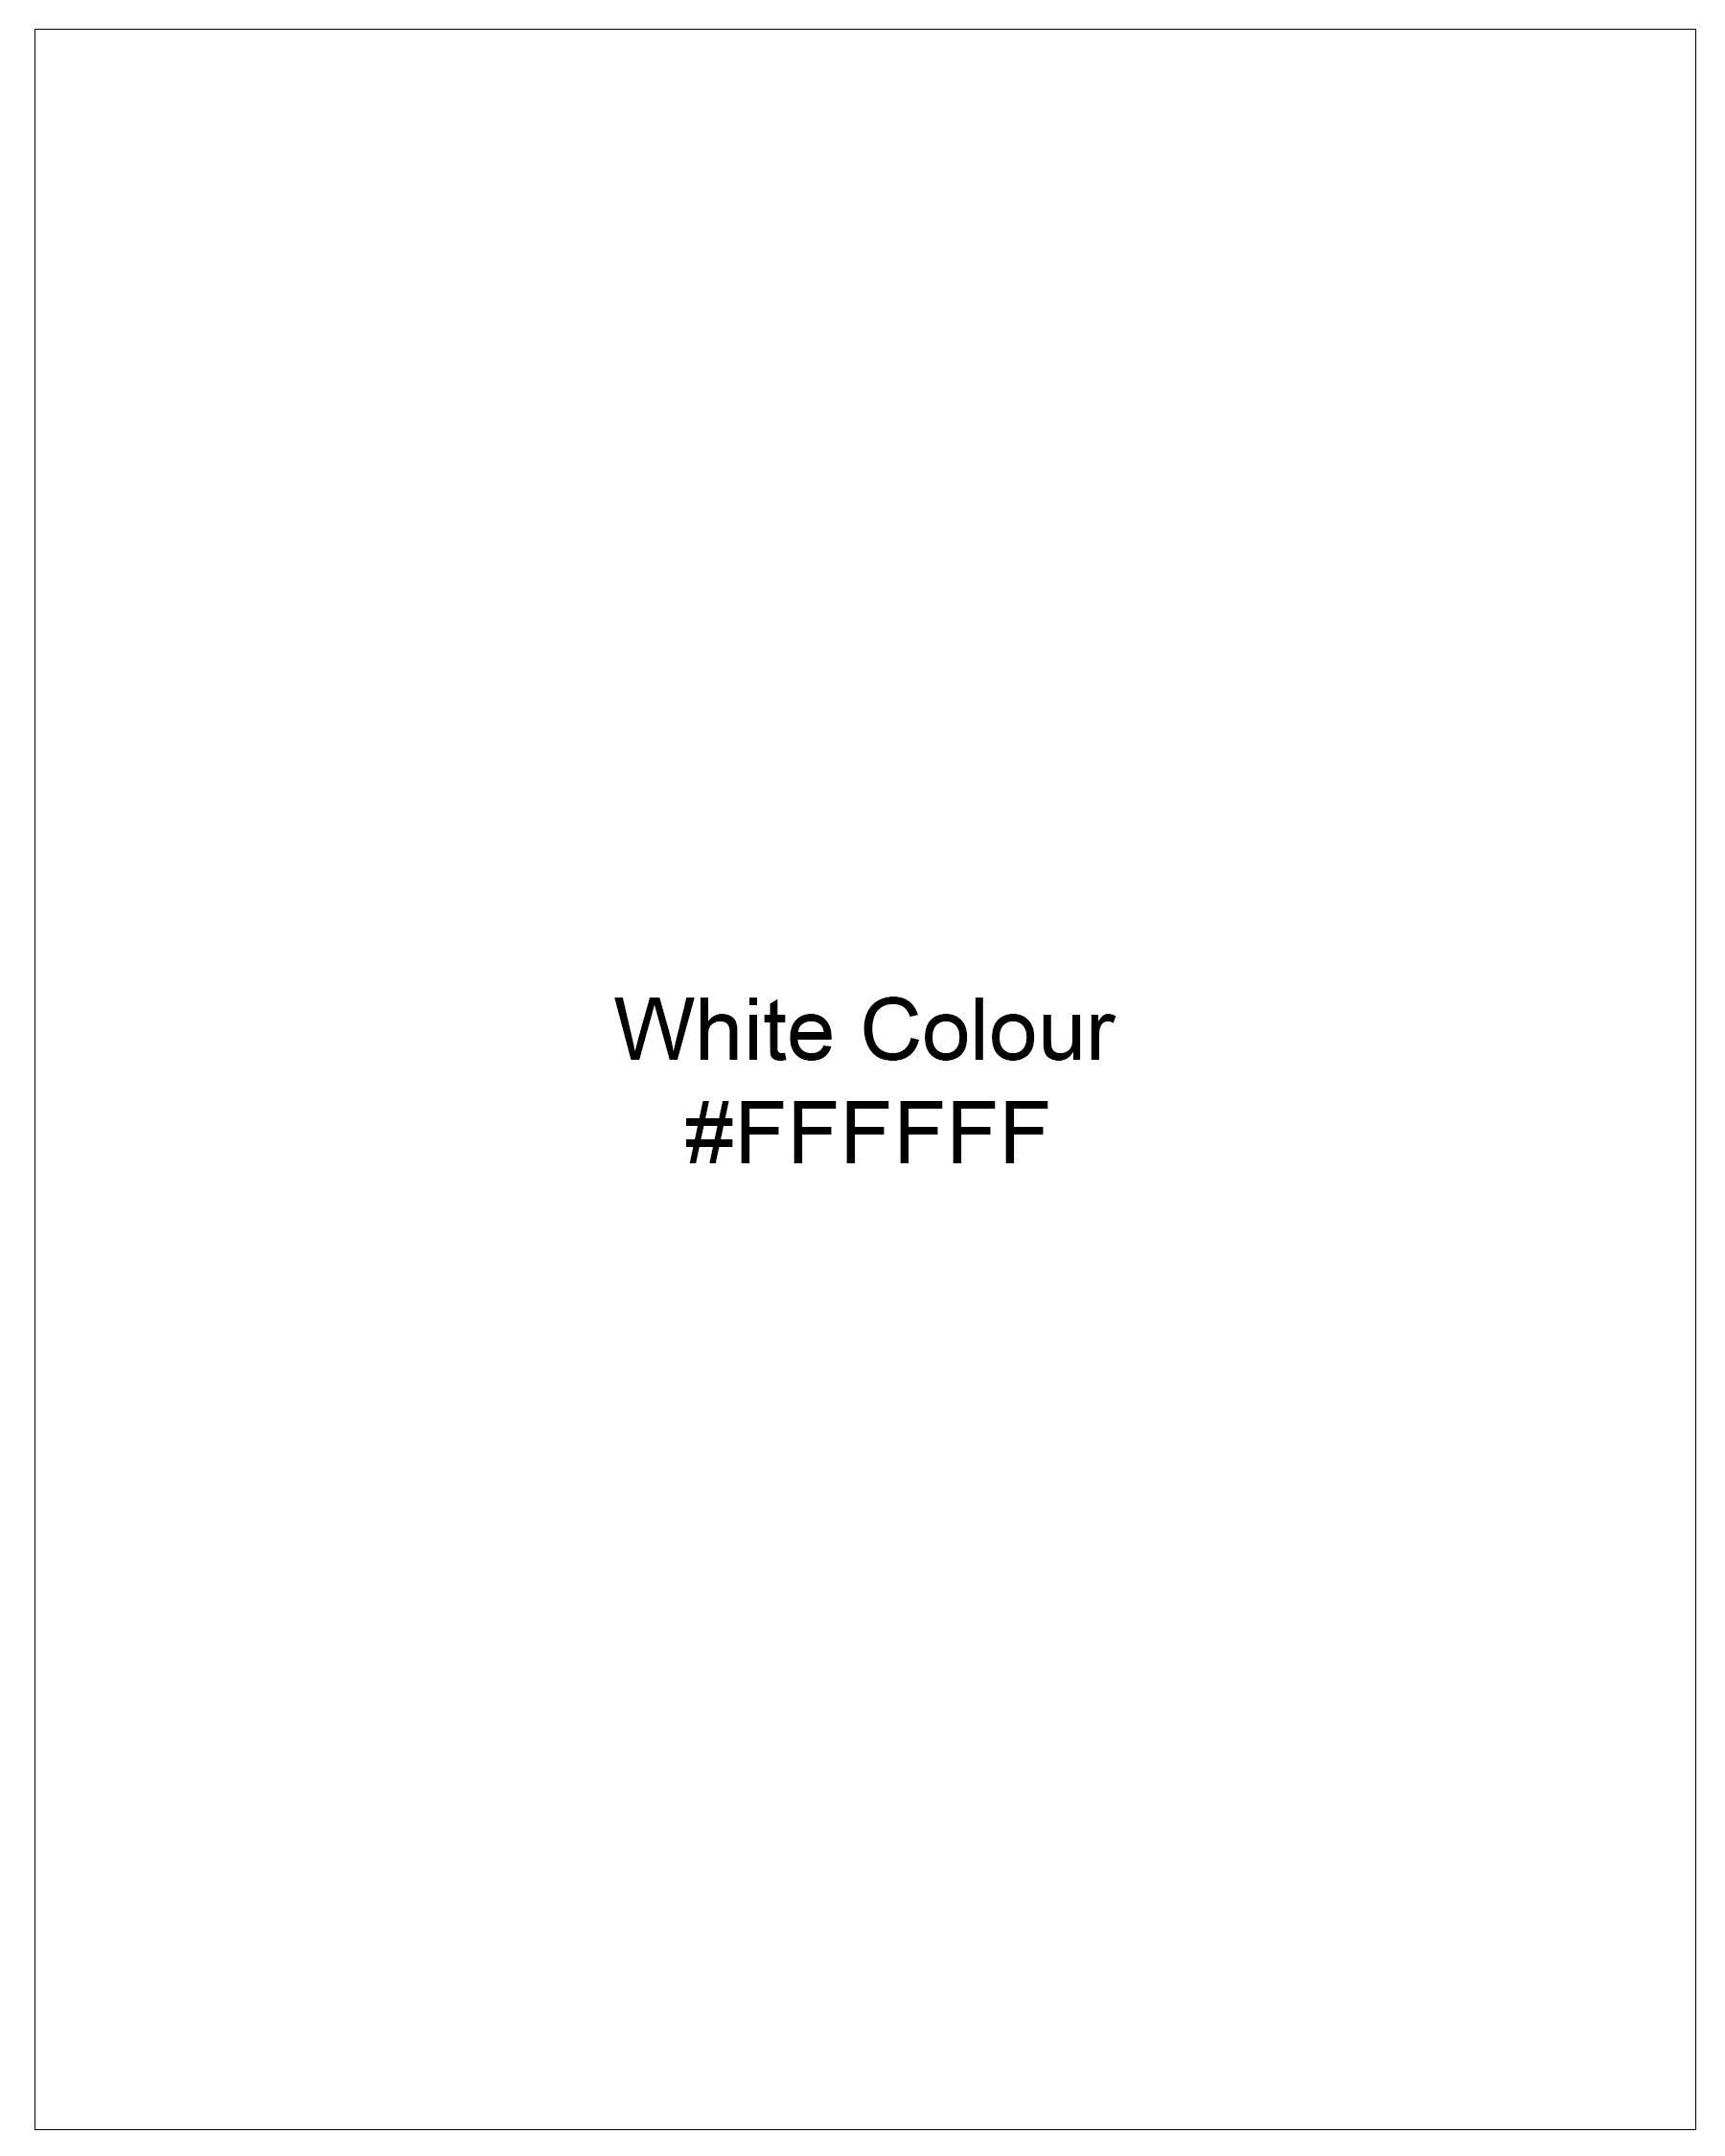 Bright White Dobby Textured Premium Giza Cotton Shirt 7868-BLK -38,7868-BLK -H-38,7868-BLK -39,7868-BLK -H-39,7868-BLK -40,7868-BLK -H-40,7868-BLK -42,7868-BLK -H-42,7868-BLK -44,7868-BLK -H-44,7868-BLK -46,7868-BLK -H-46,7868-BLK -48,7868-BLK -H-48,7868-BLK -50,7868-BLK -H-50,7868-BLK -52,7868-BLK -H-52